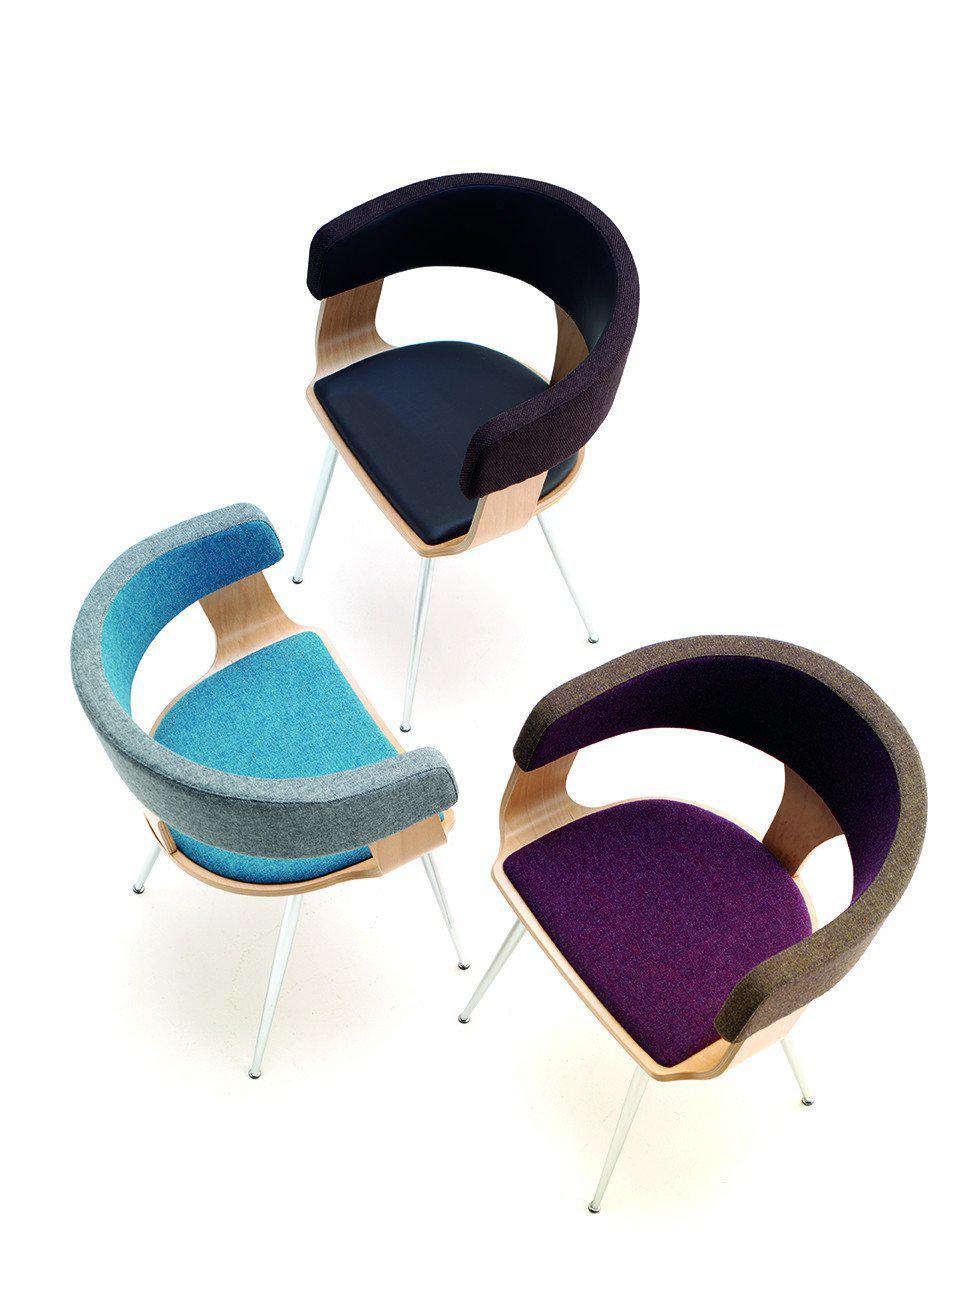 Mali Armchair c/w Metal Legs-Cignini-Contract Furniture Store